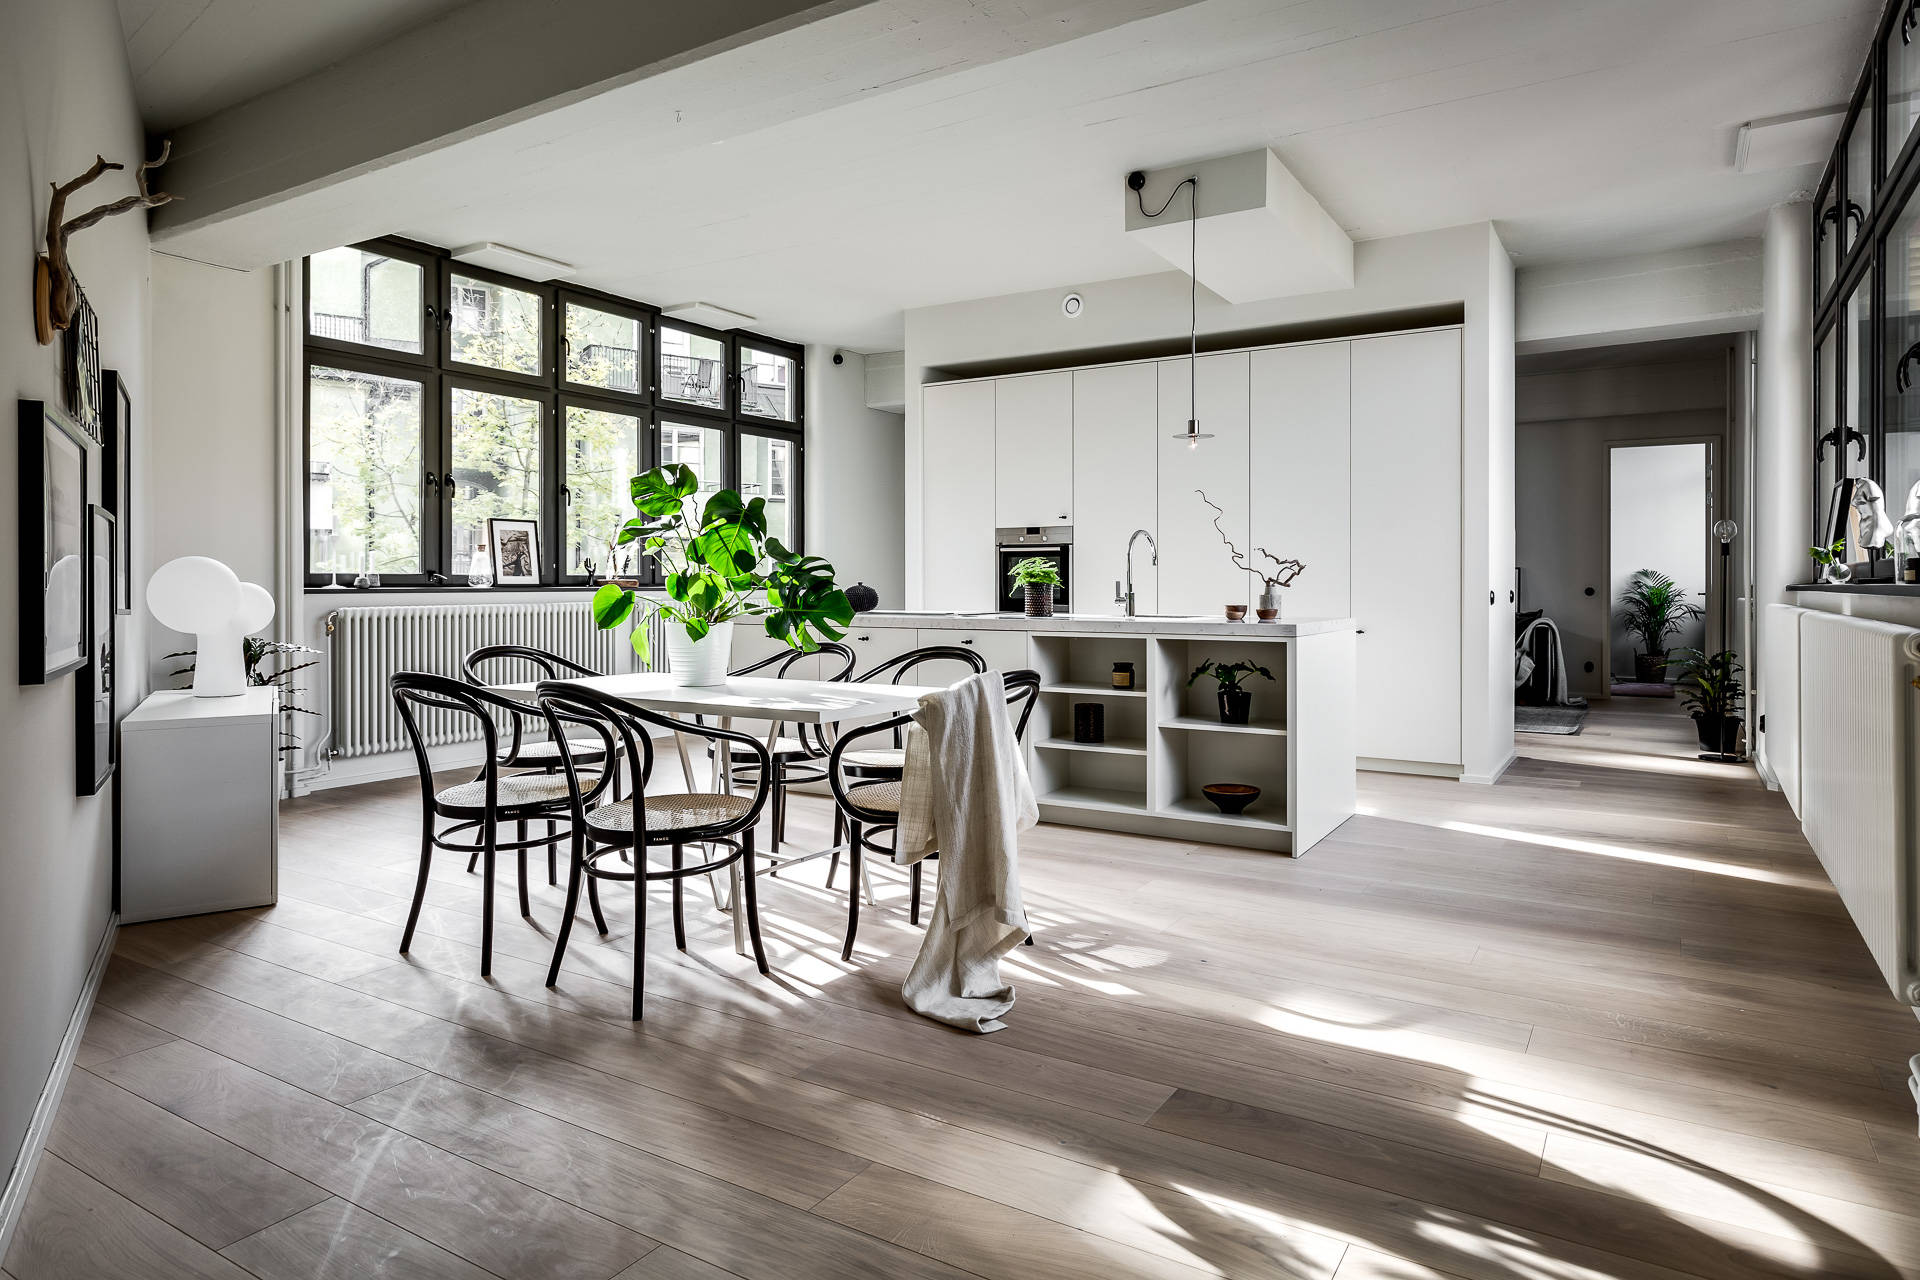 delikatissen extractor encimera distribución abierta diseño interiores decoración interiores cocina nórdica cocina moderna cocina minimalista cocina minimal 